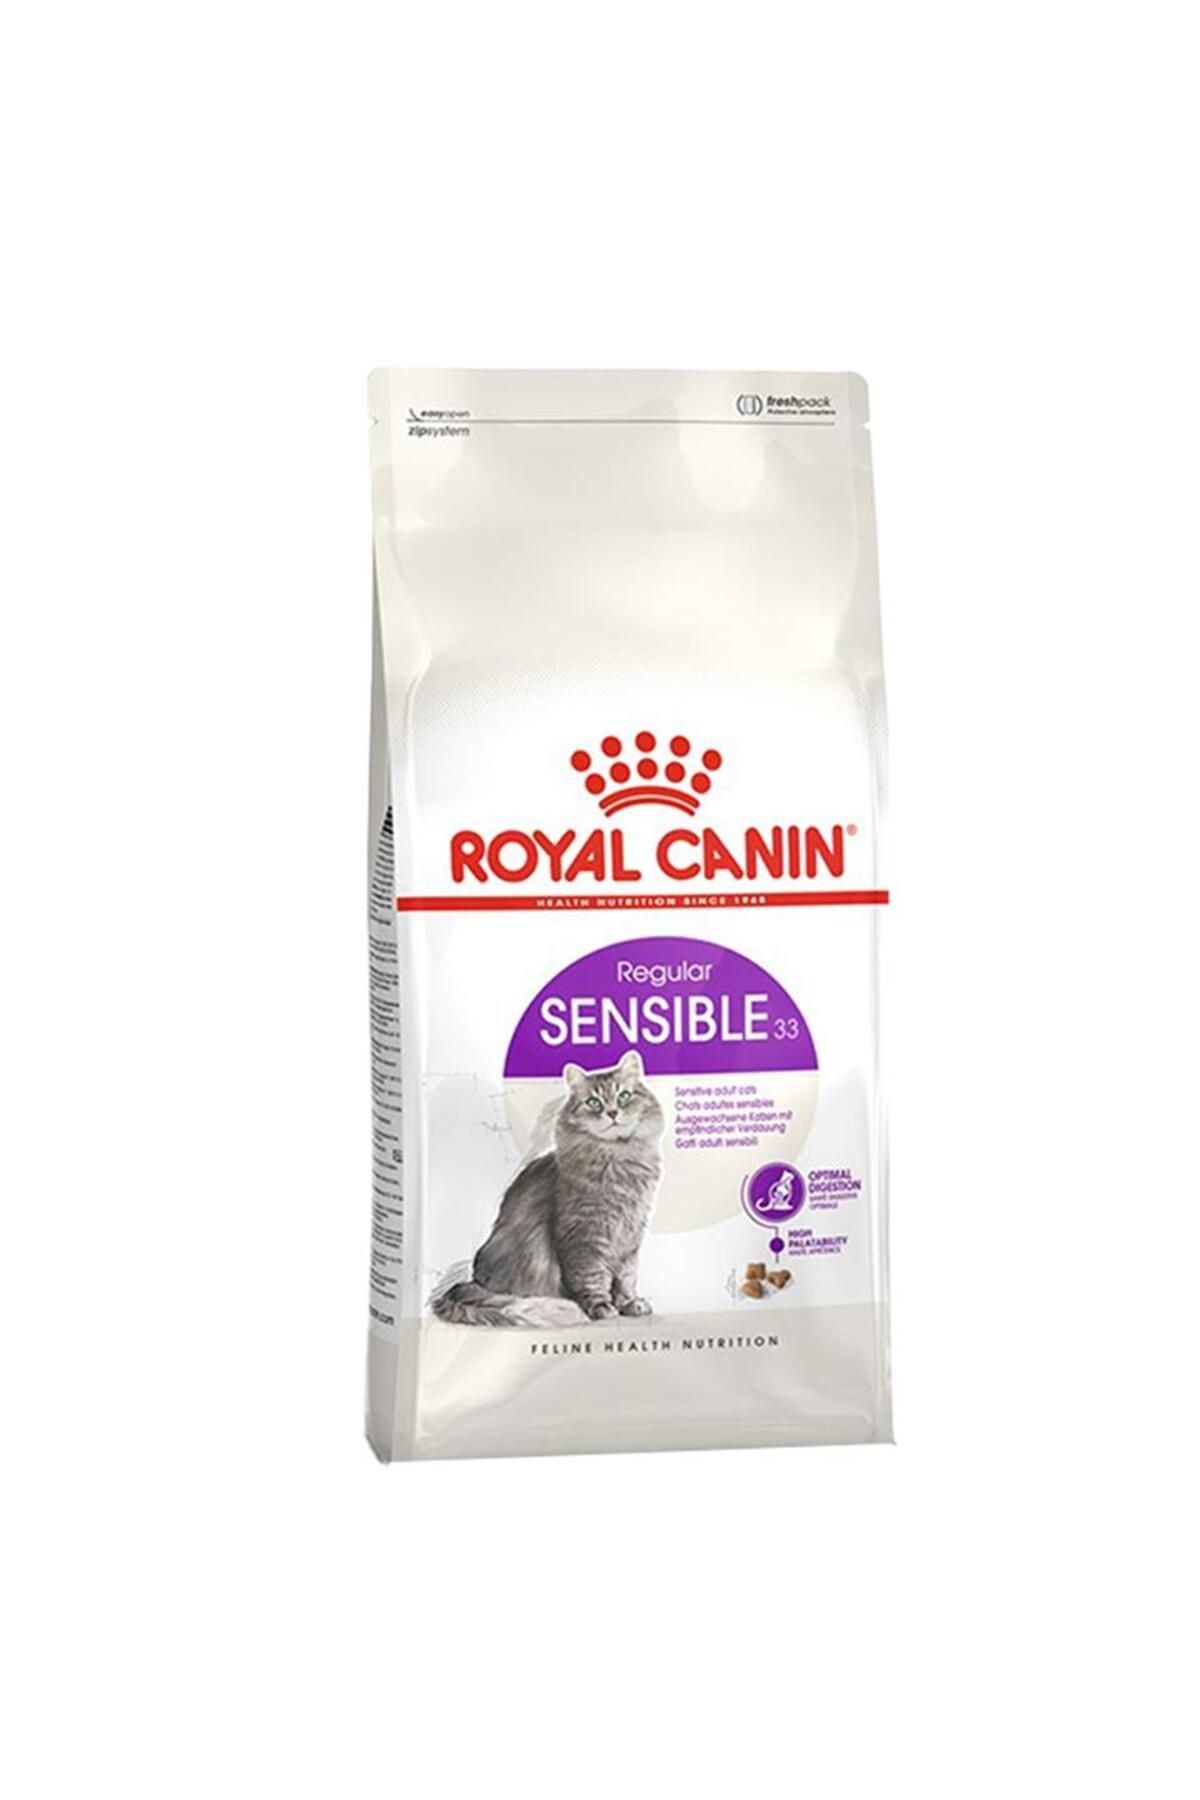 Royal Canin ® Sensible 33 Hassas Sindirimi Destekleyici Yetişkin Kedi Maması 4 Kg